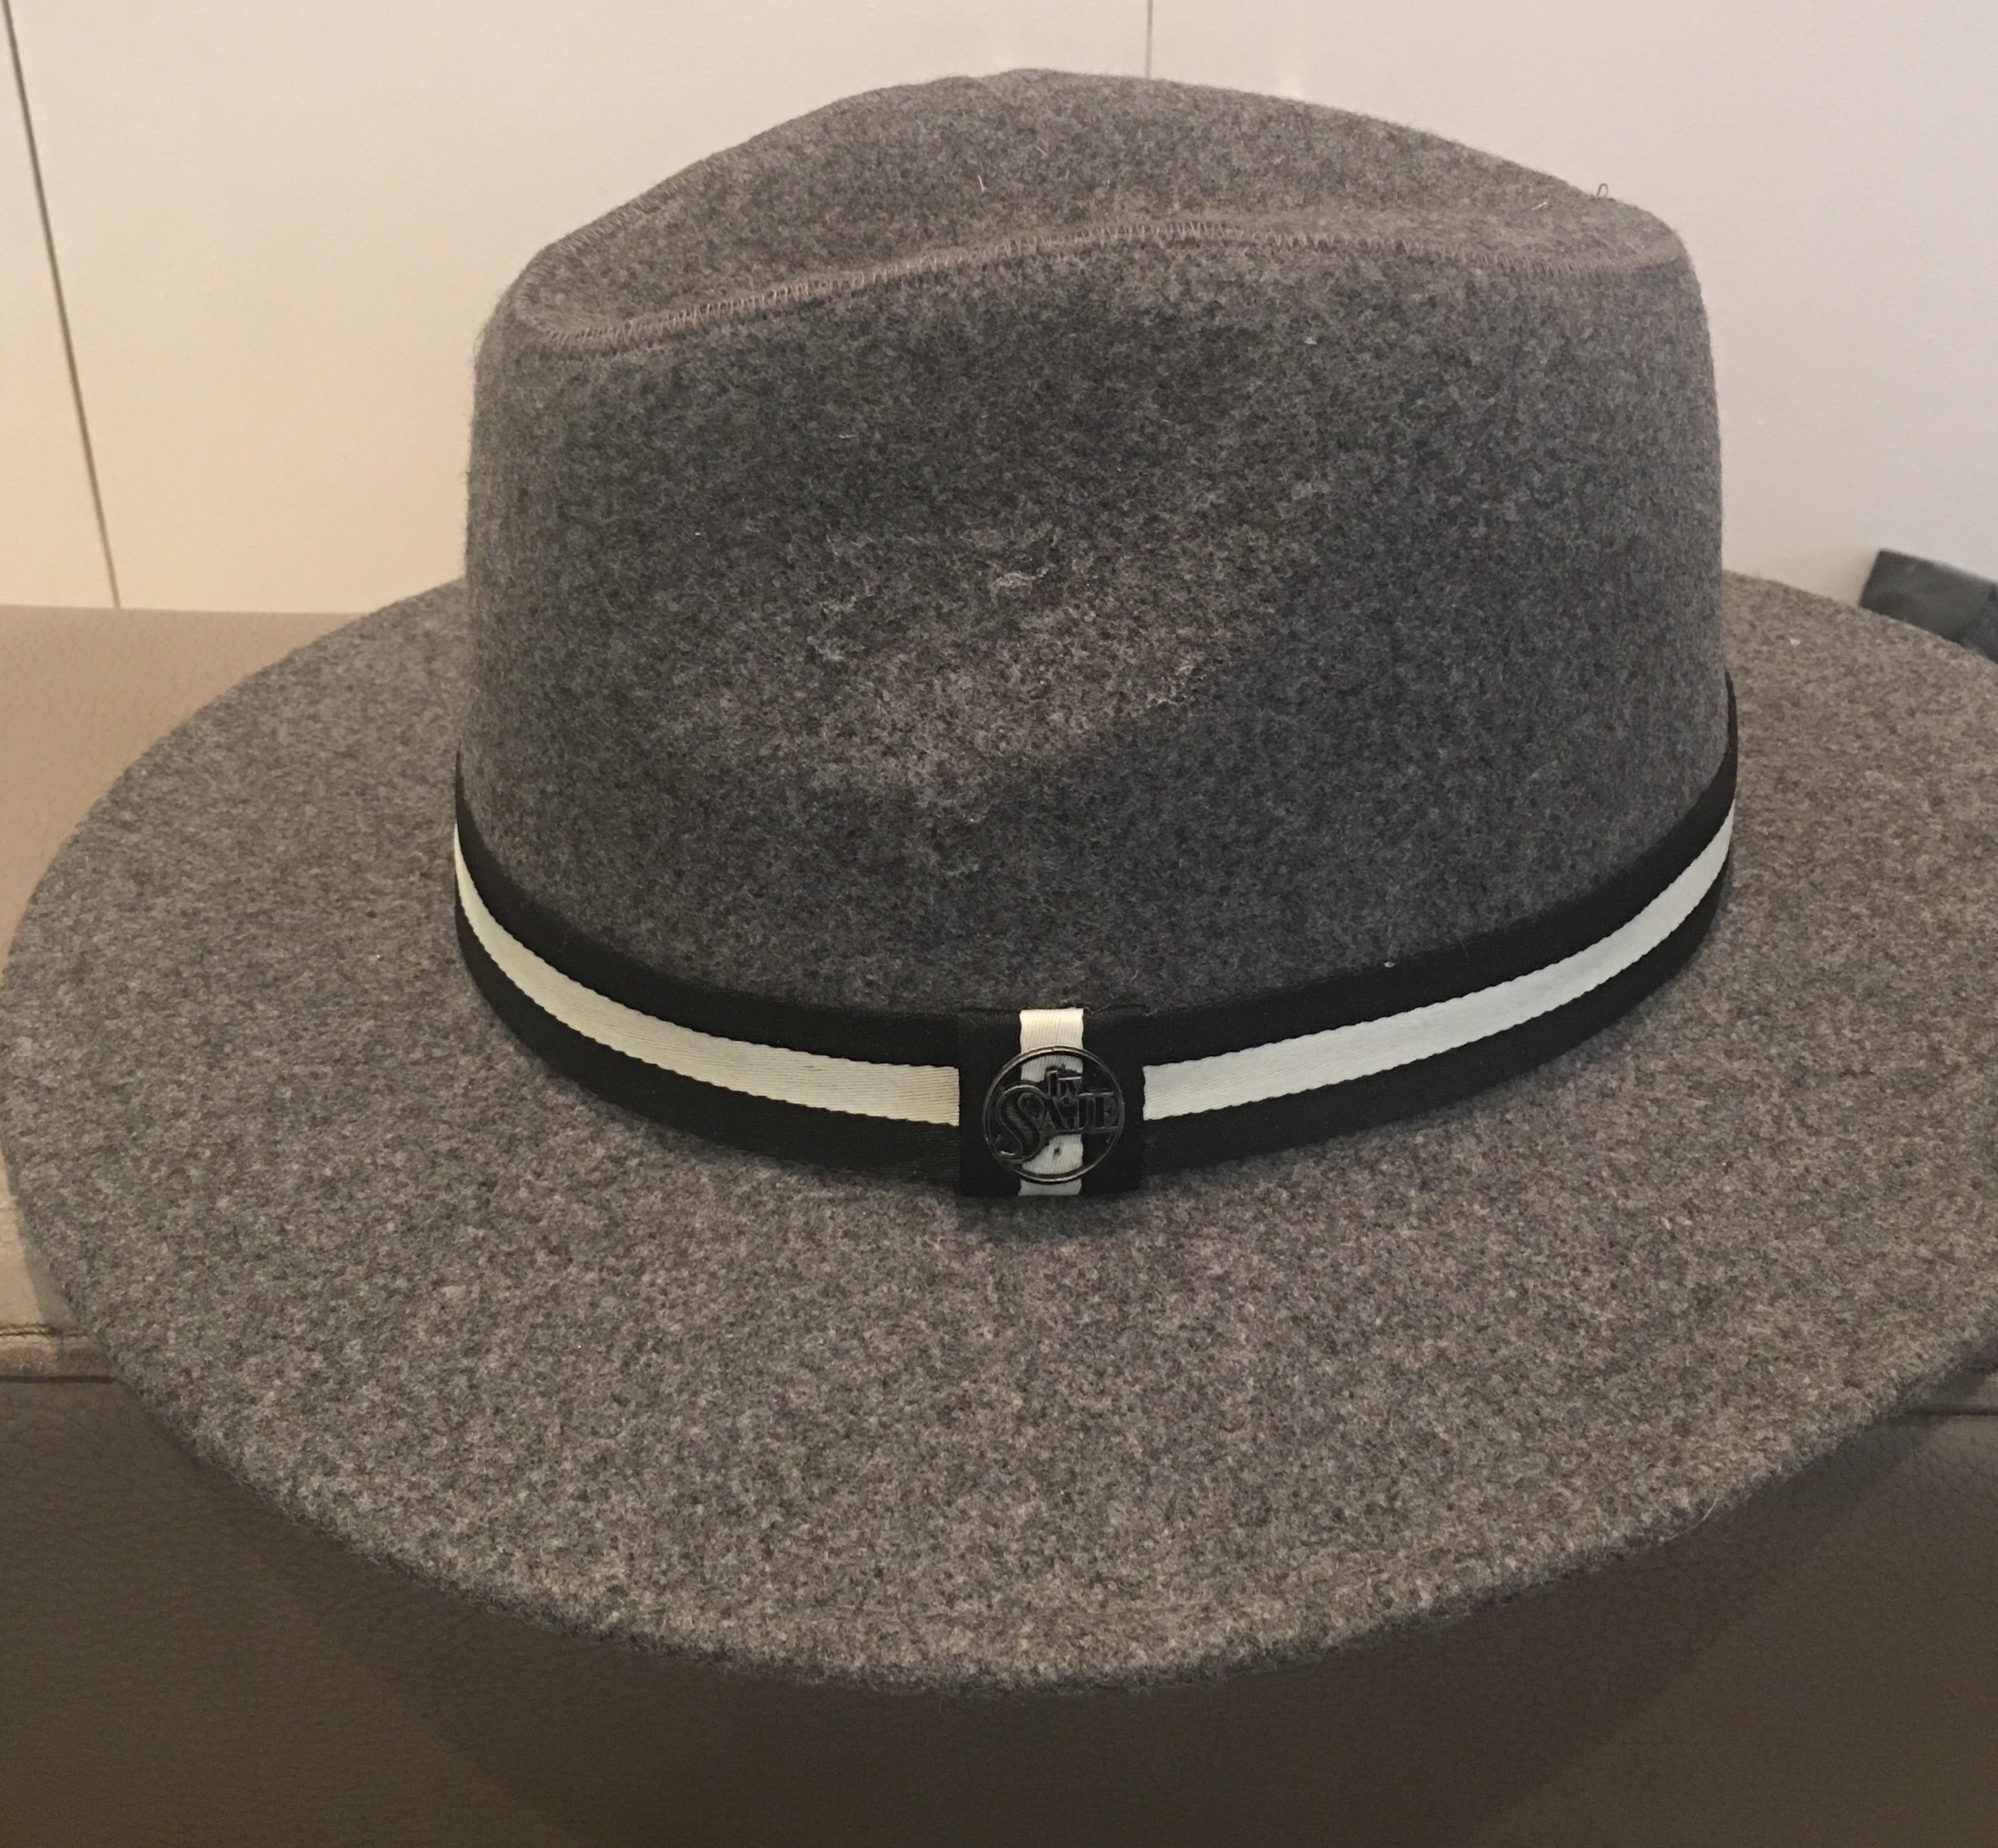 chapeau Fred chapeau soprano the voice 2019 tf1 chapeau homme accessoires chapeau by saje